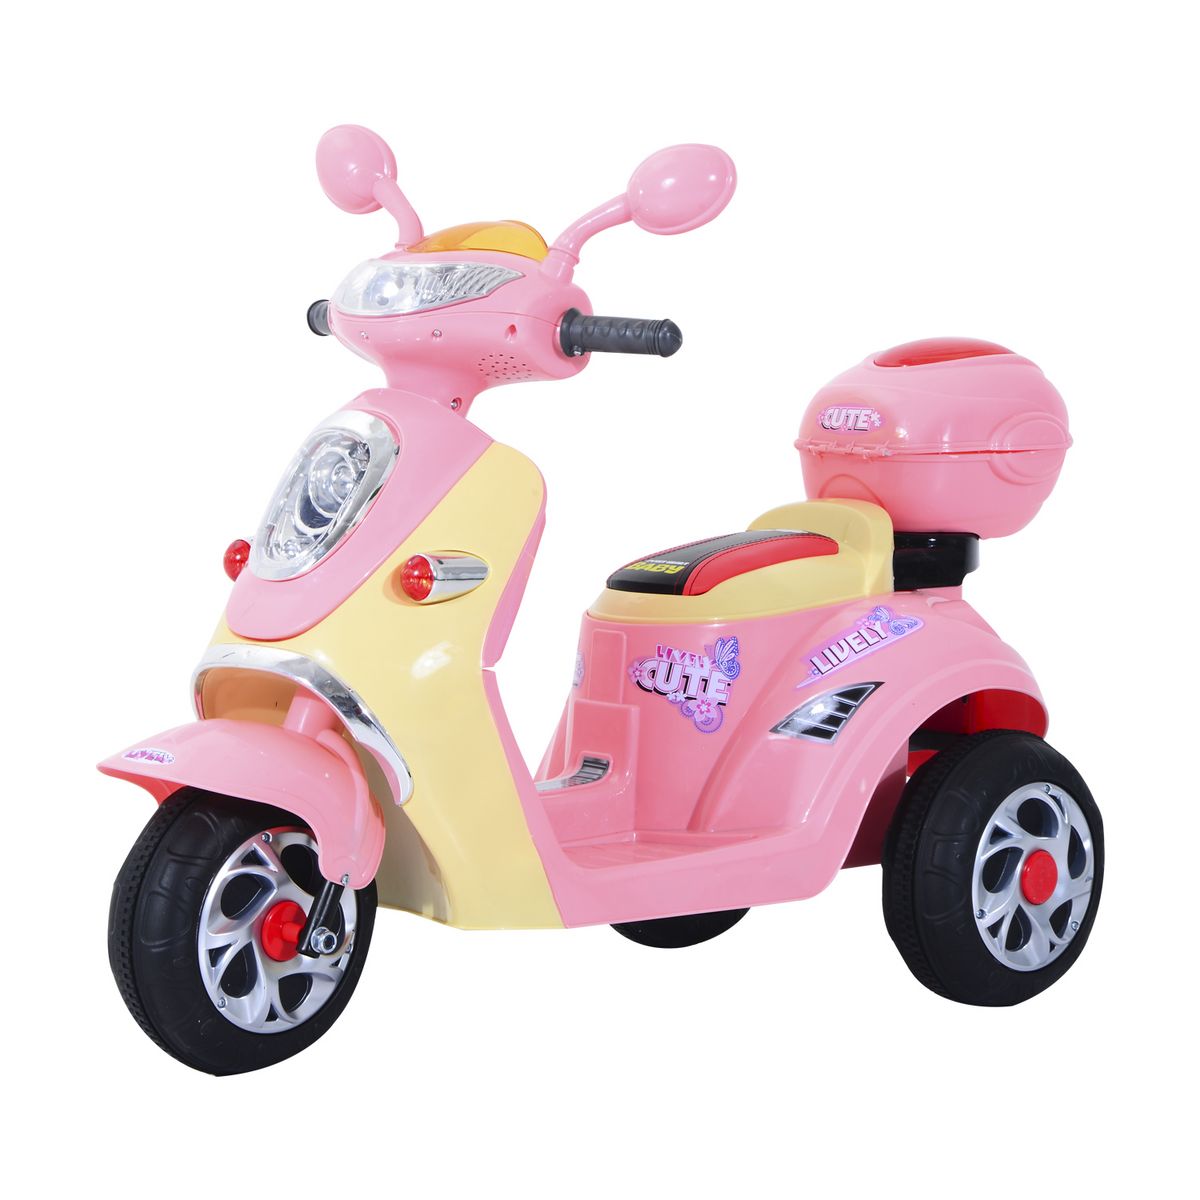 HOMCOM HOMCOM Moto scooter électrique pour enfants 6 V env. 3 Km/h 3 roues et topcase effet lumineux et sonore rose